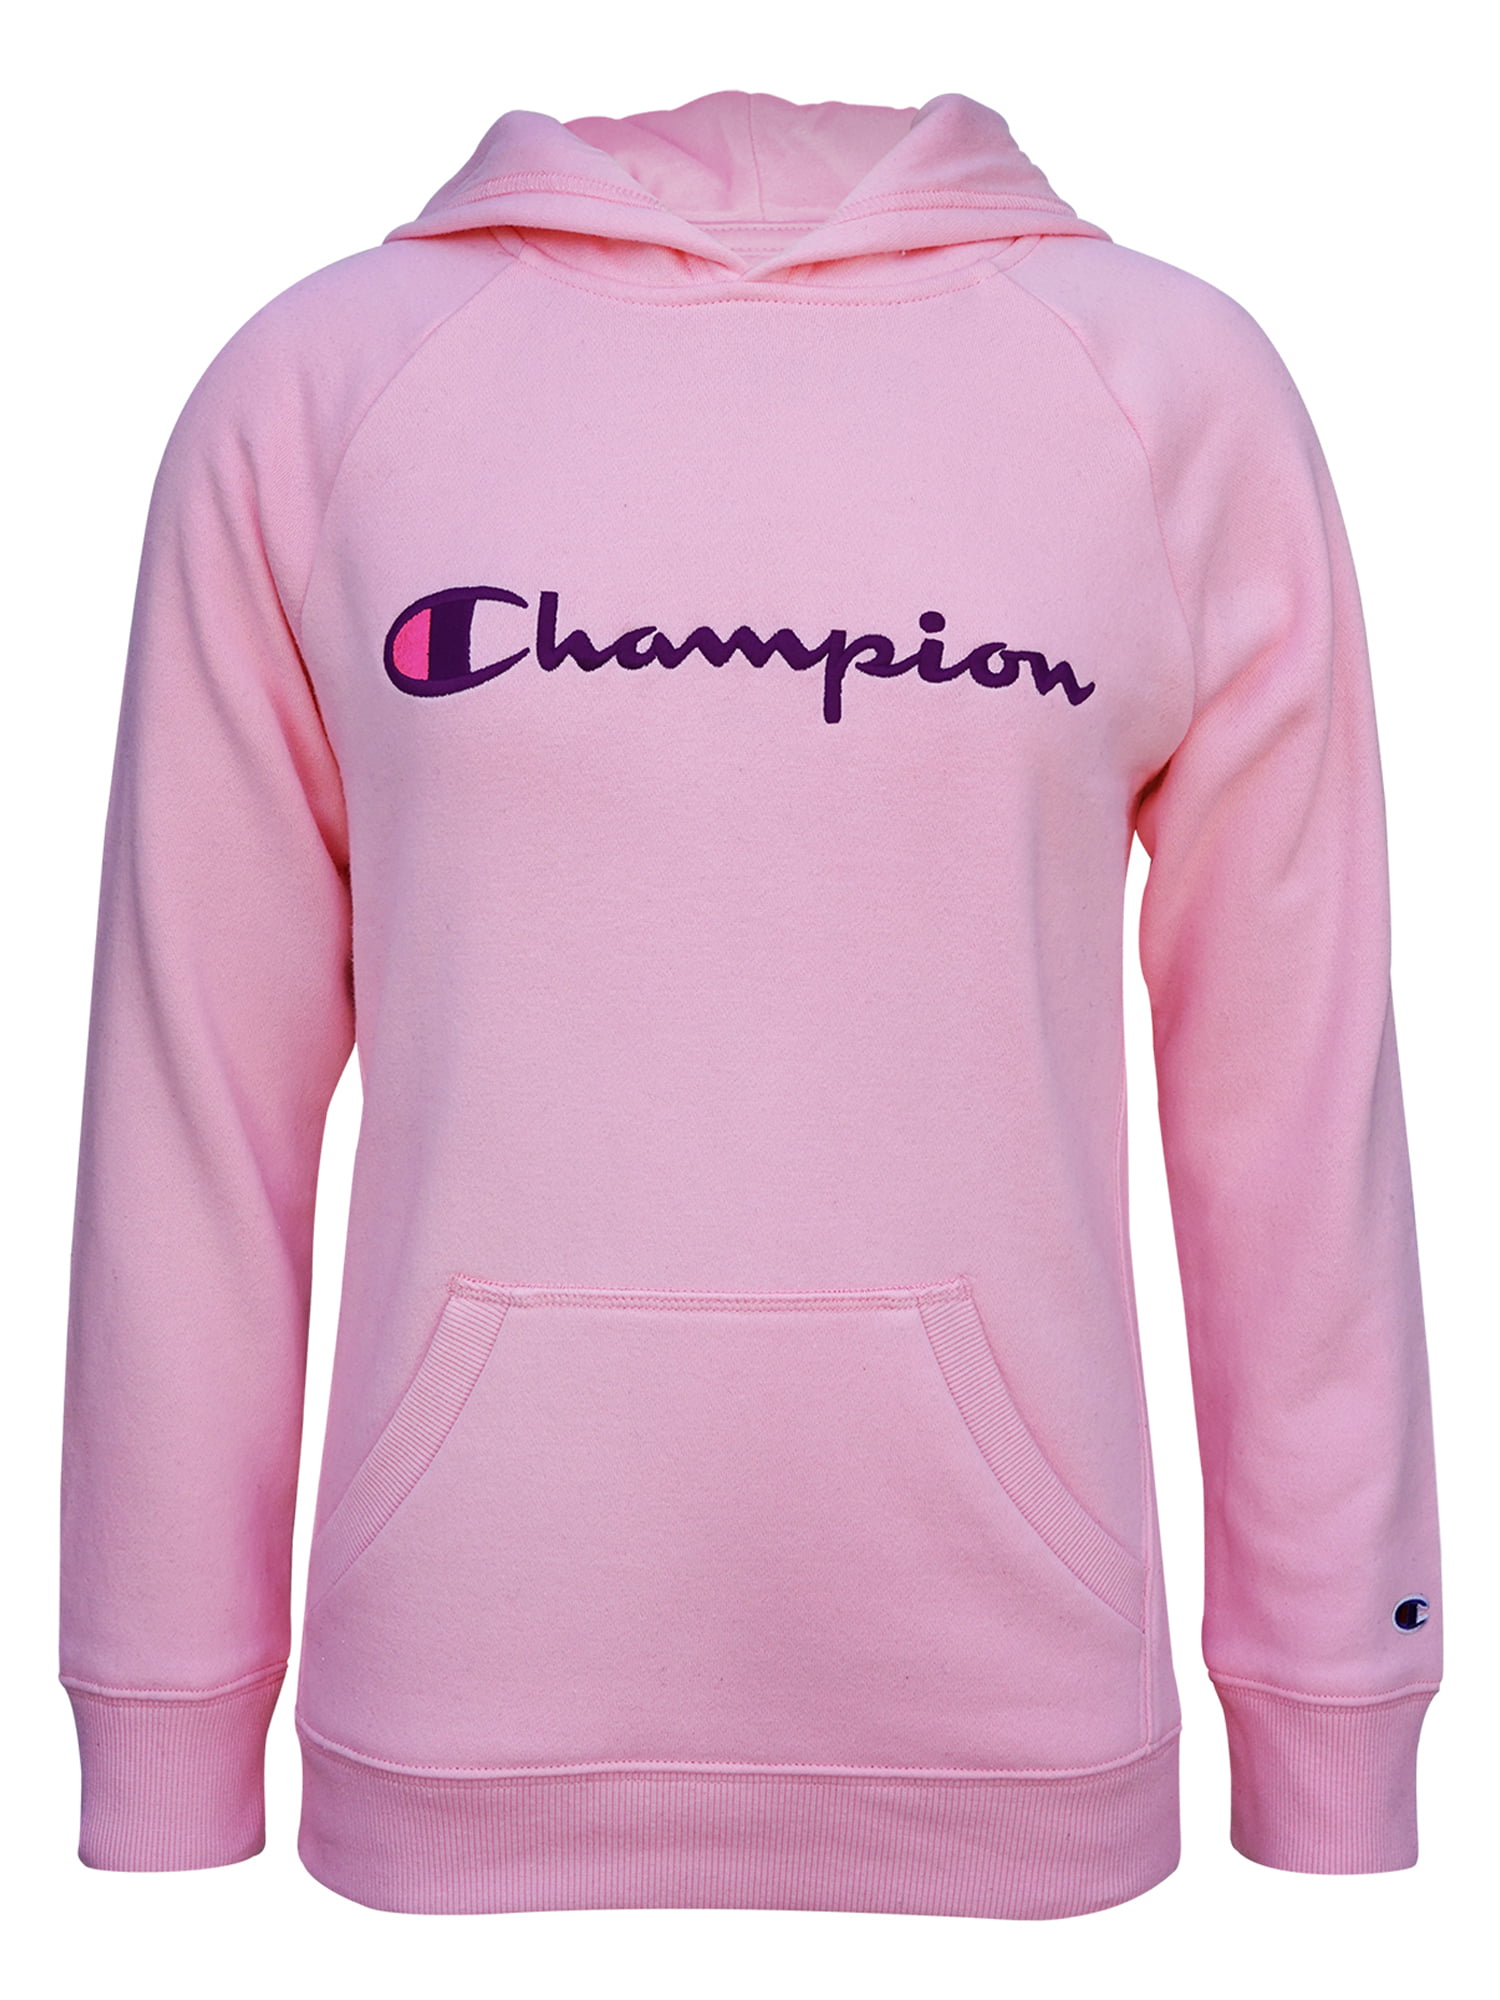 champion girls fleece jacket